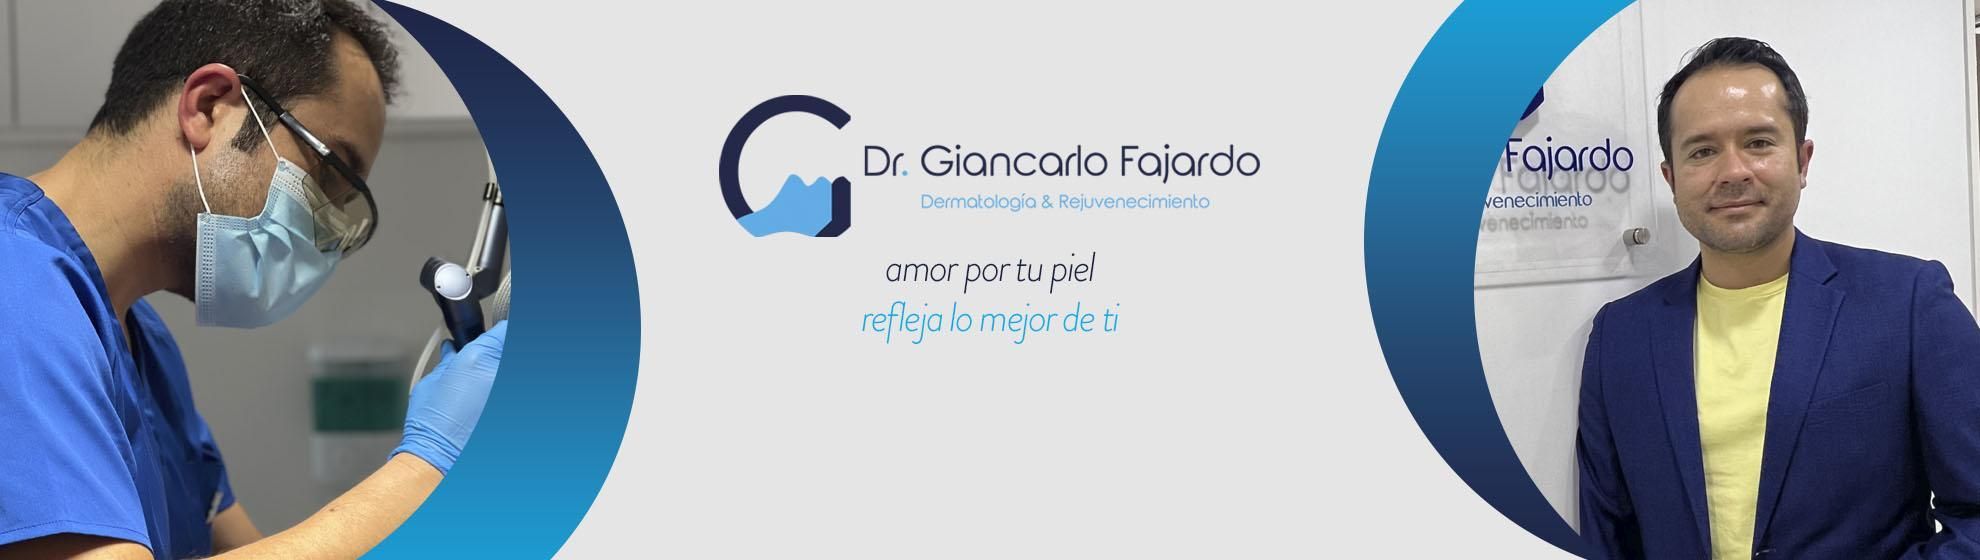 Dr. Giancarlo Fajardo